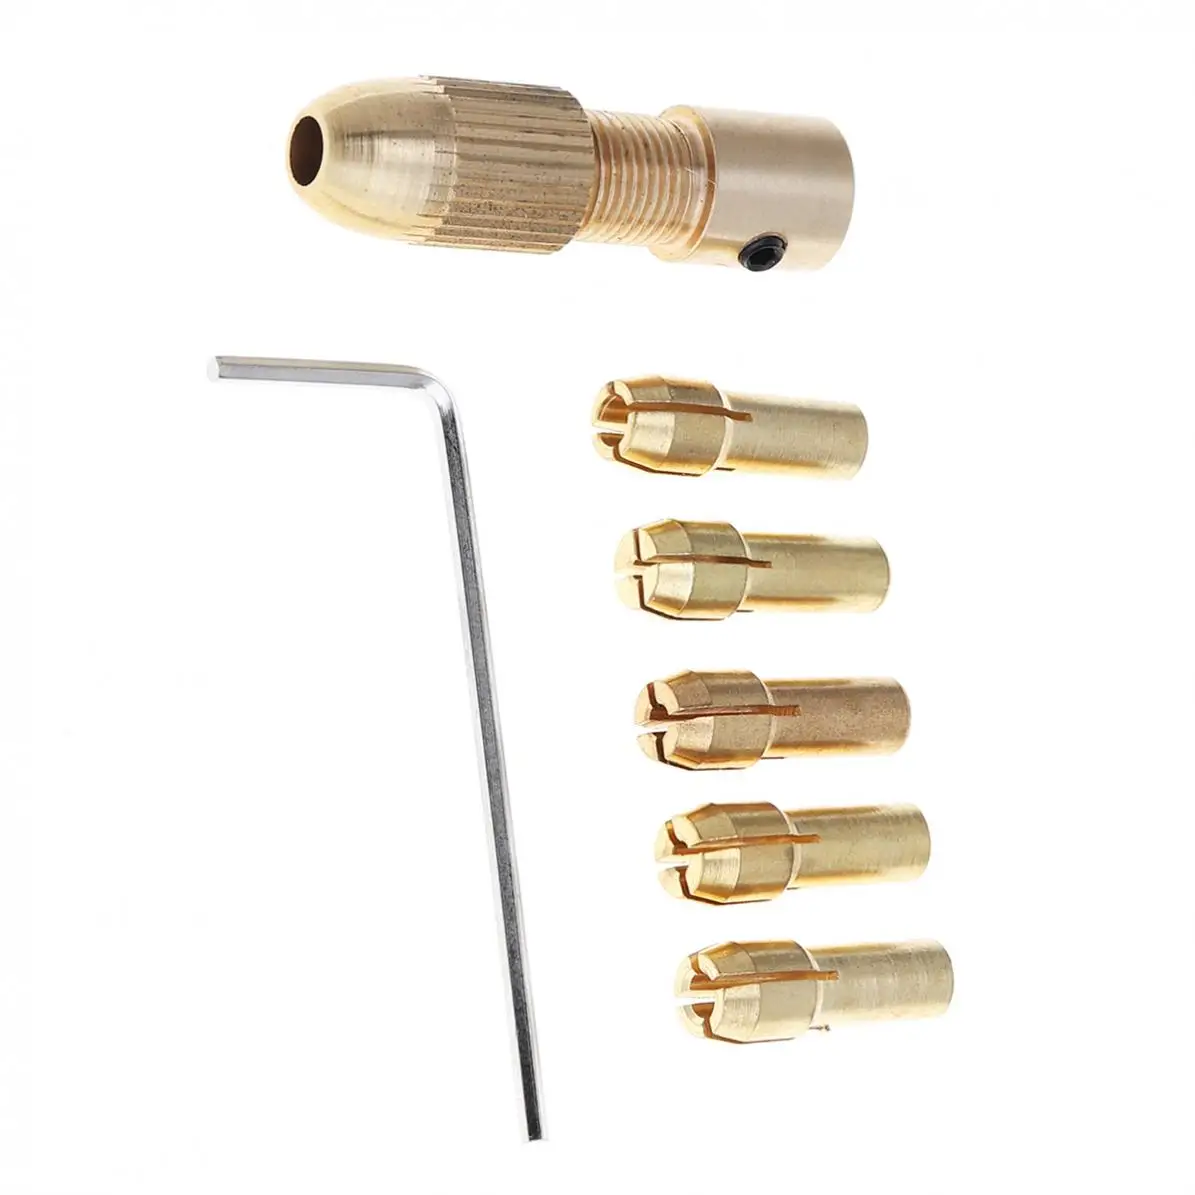 

Mini Drill Brass Collet Chuck 7pcs/lot 2.35/3.17mm Drill Chucks support 0.5 - 3.0MM Drill Bit for ABS Board / Light Board Punch